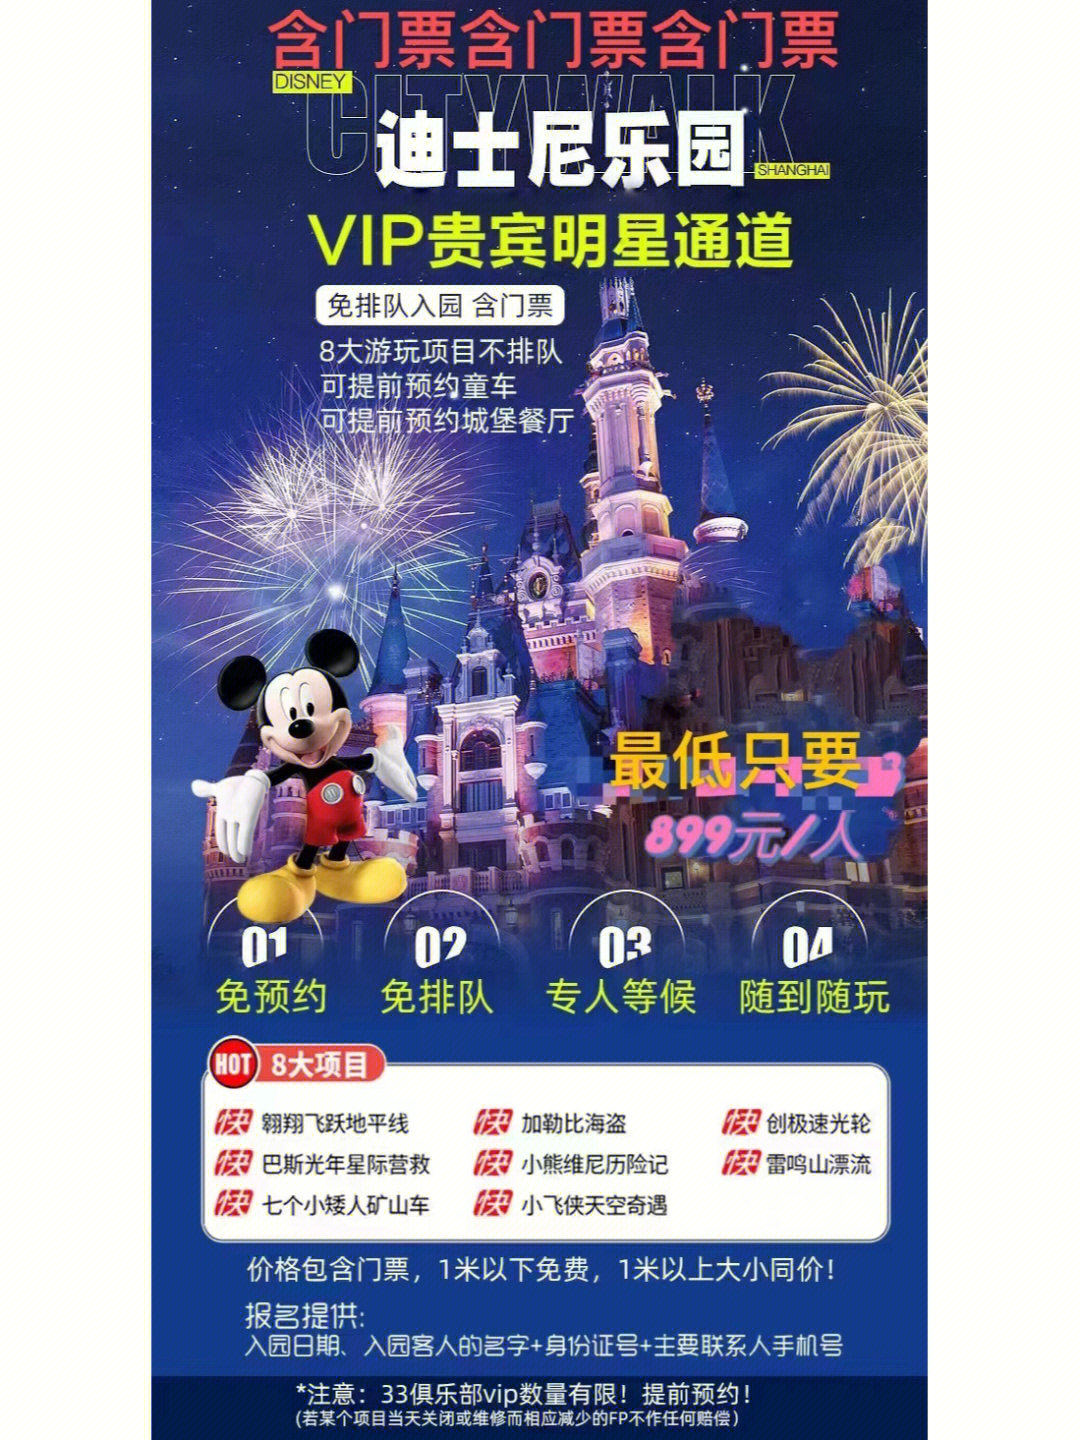 上海迪士尼乐园vip卡迪士尼免排队入园门票 8项快速通道 可付费升级奇